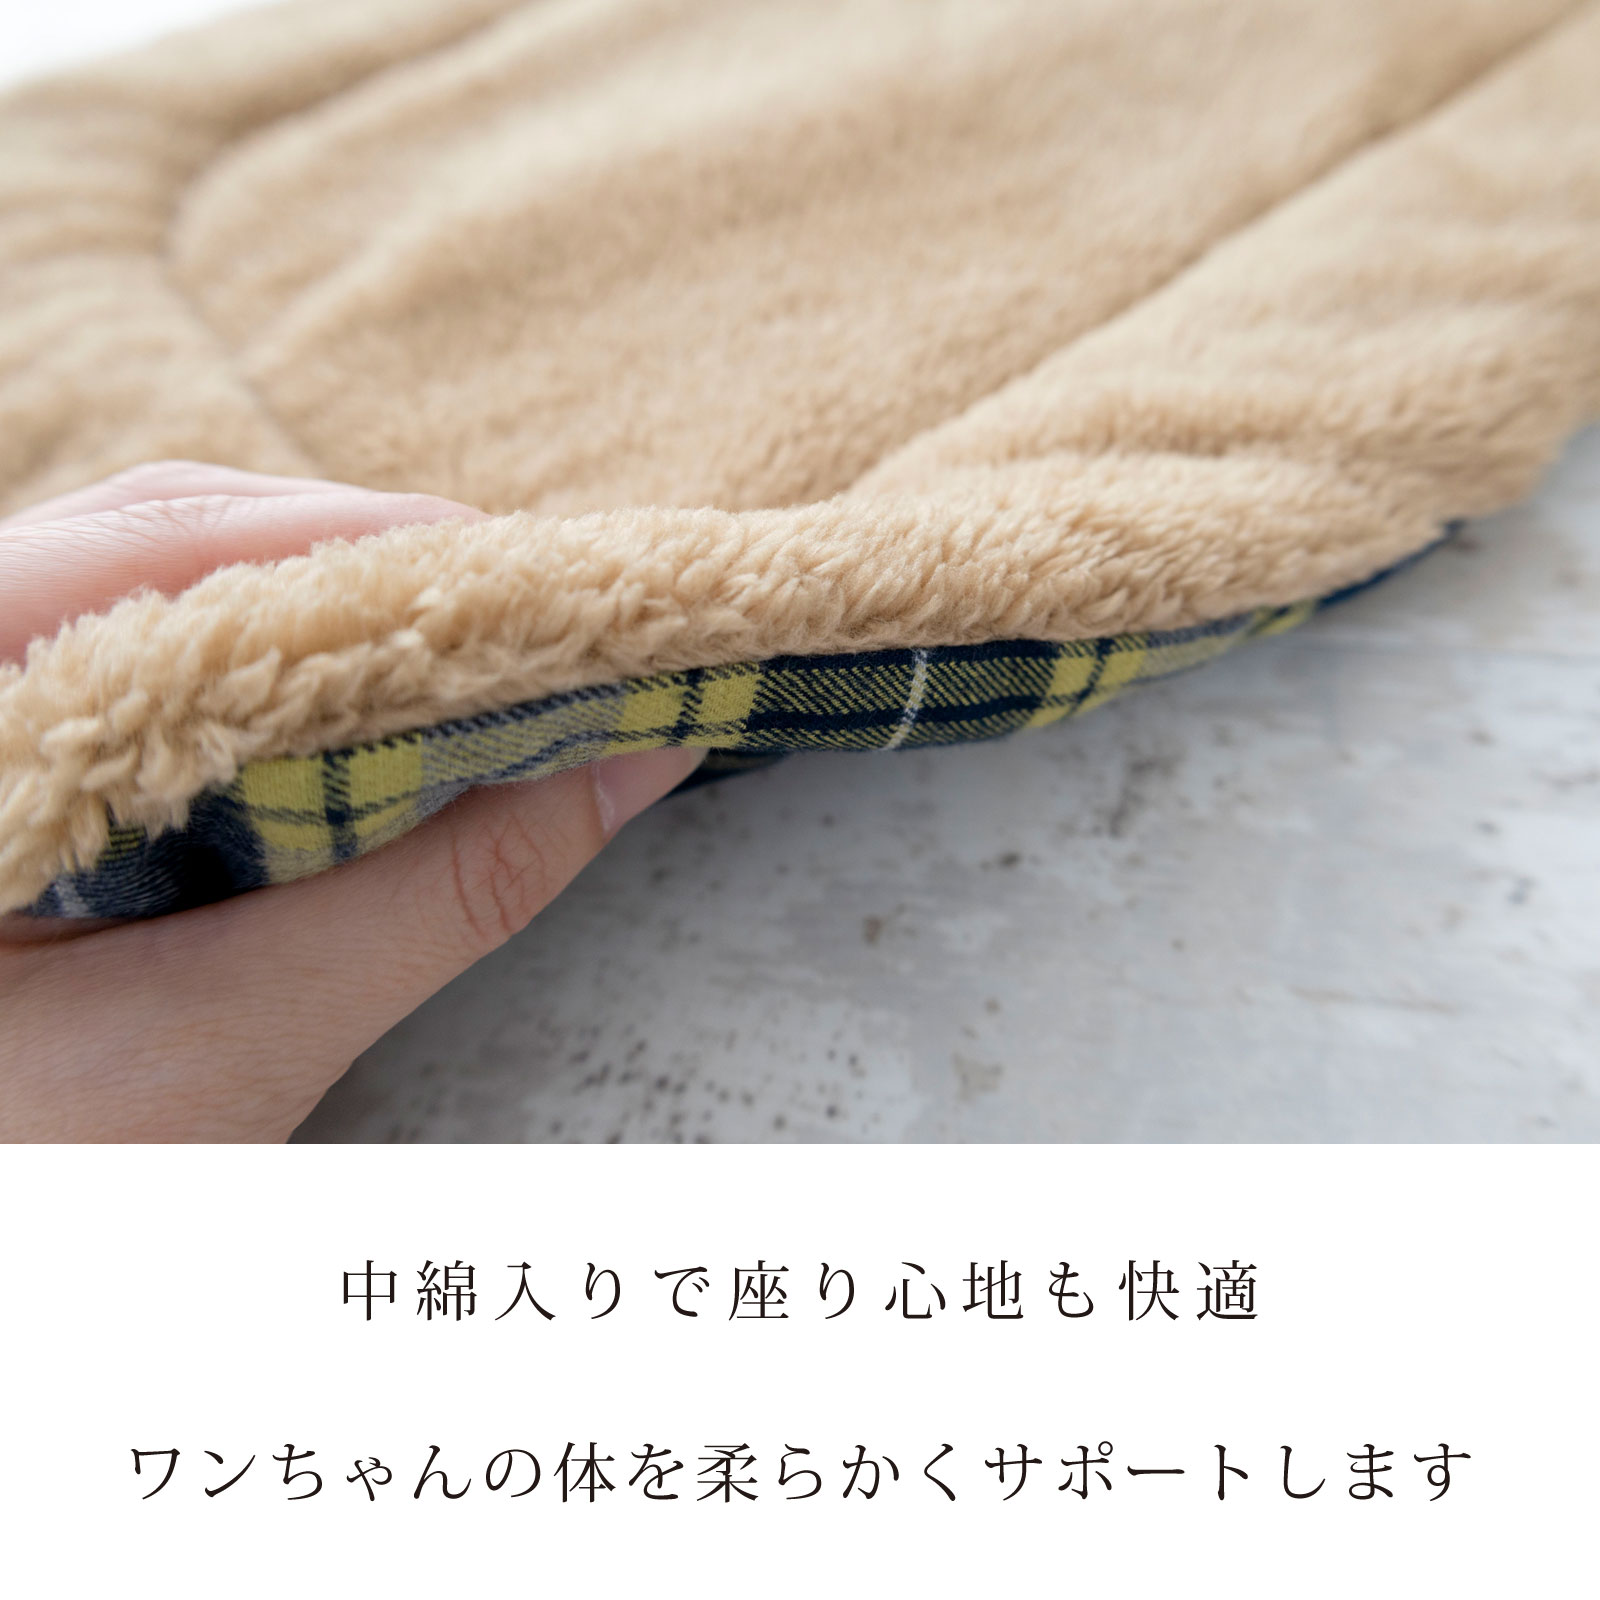 日本製 キャリー用マット クレート用マット 犬 猫 防寒 冬 ワンちゃんの体を柔らかくサポート